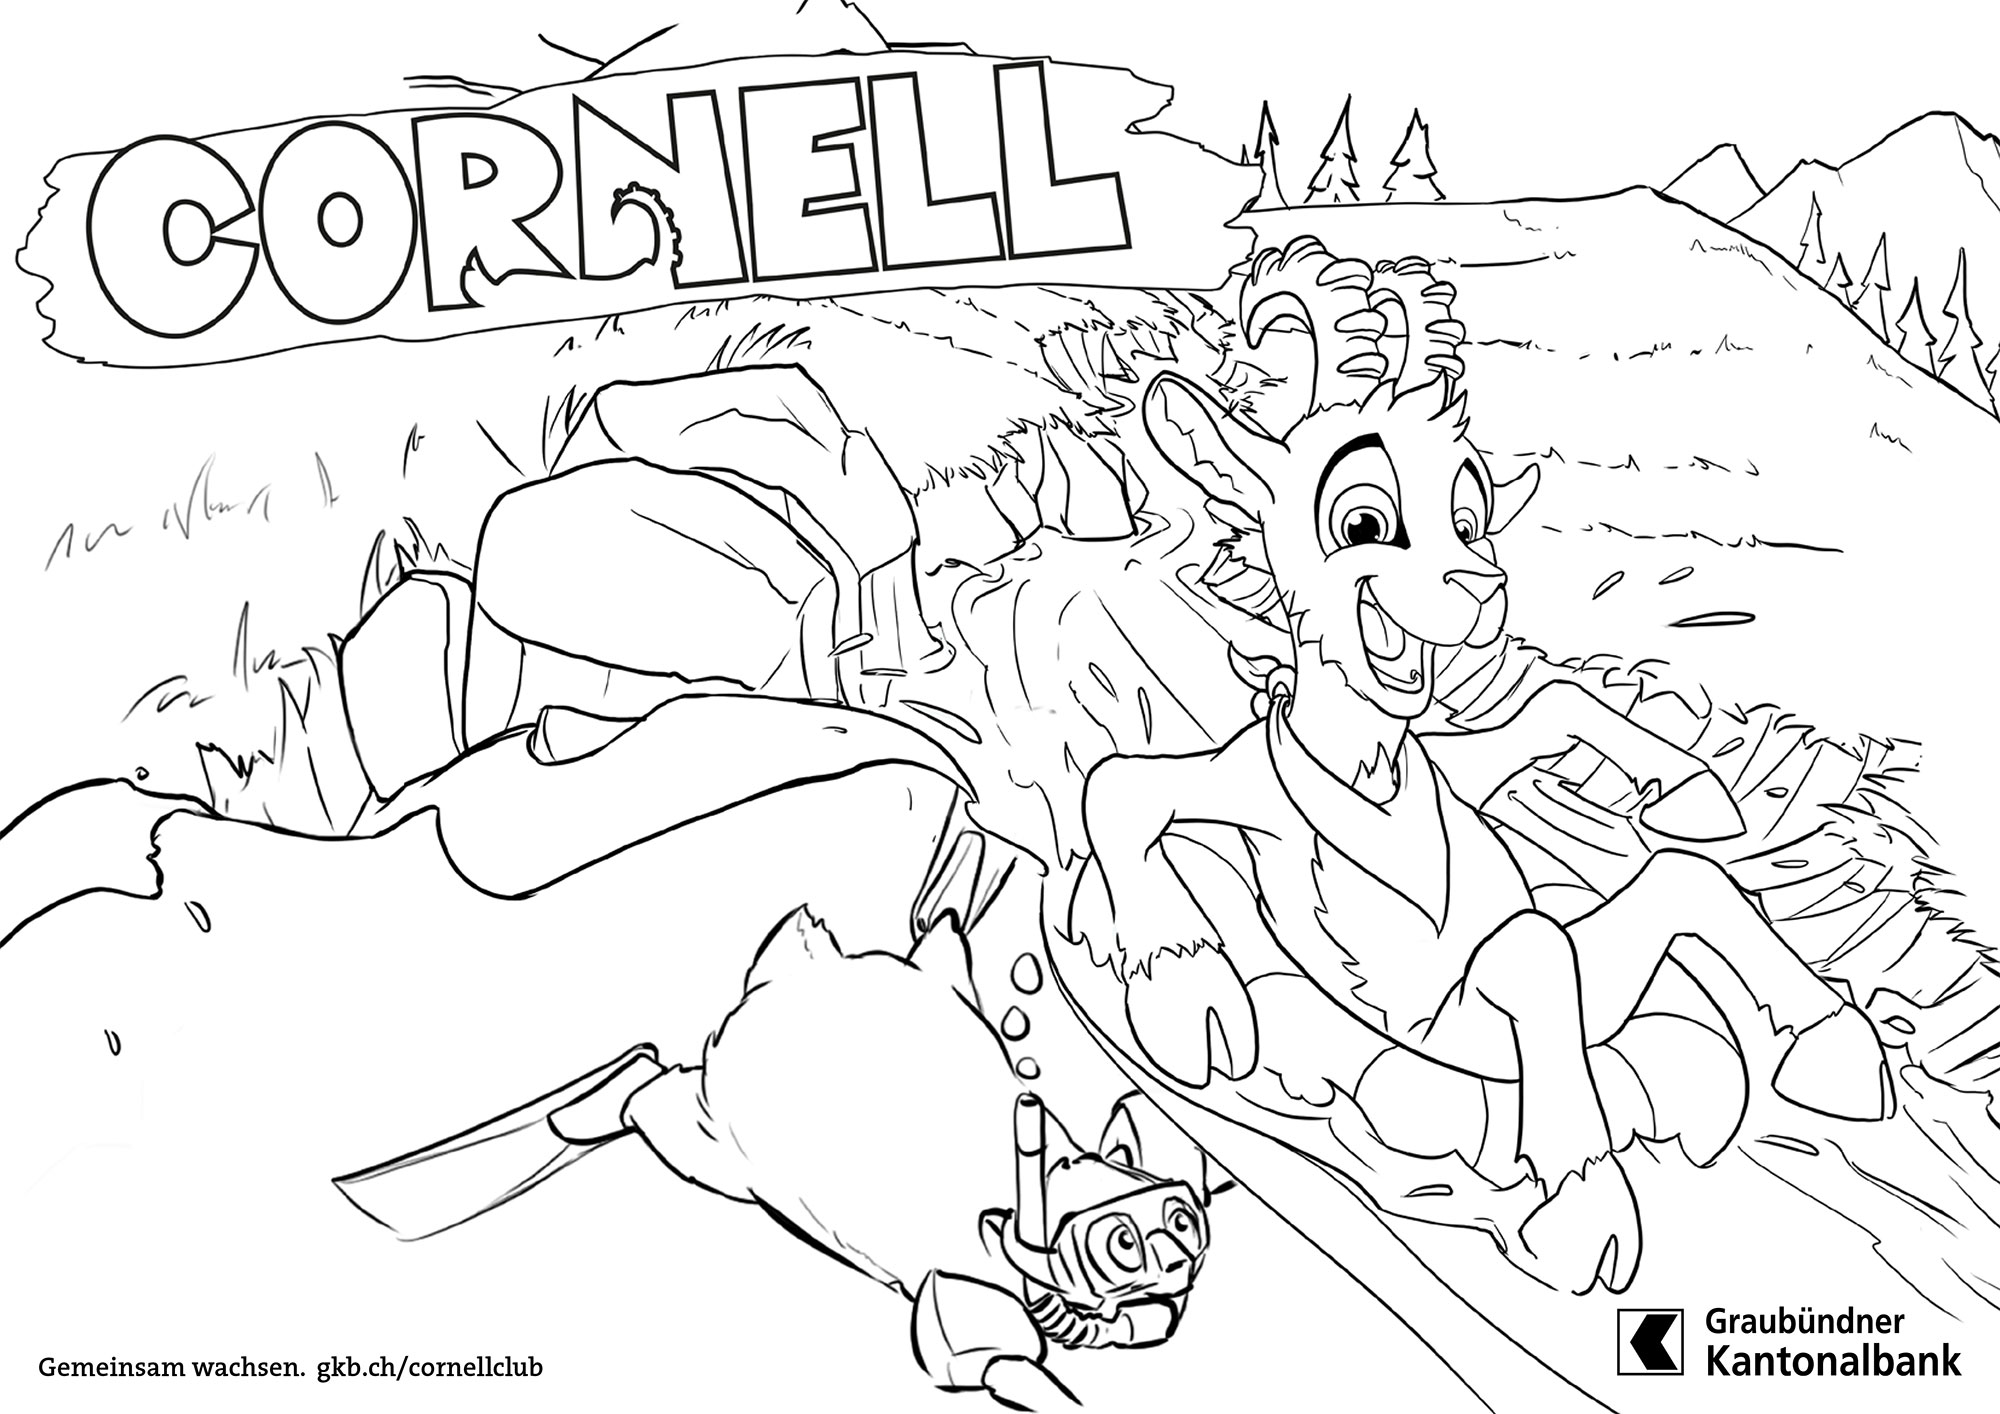 Cornell e la slitta degli husky